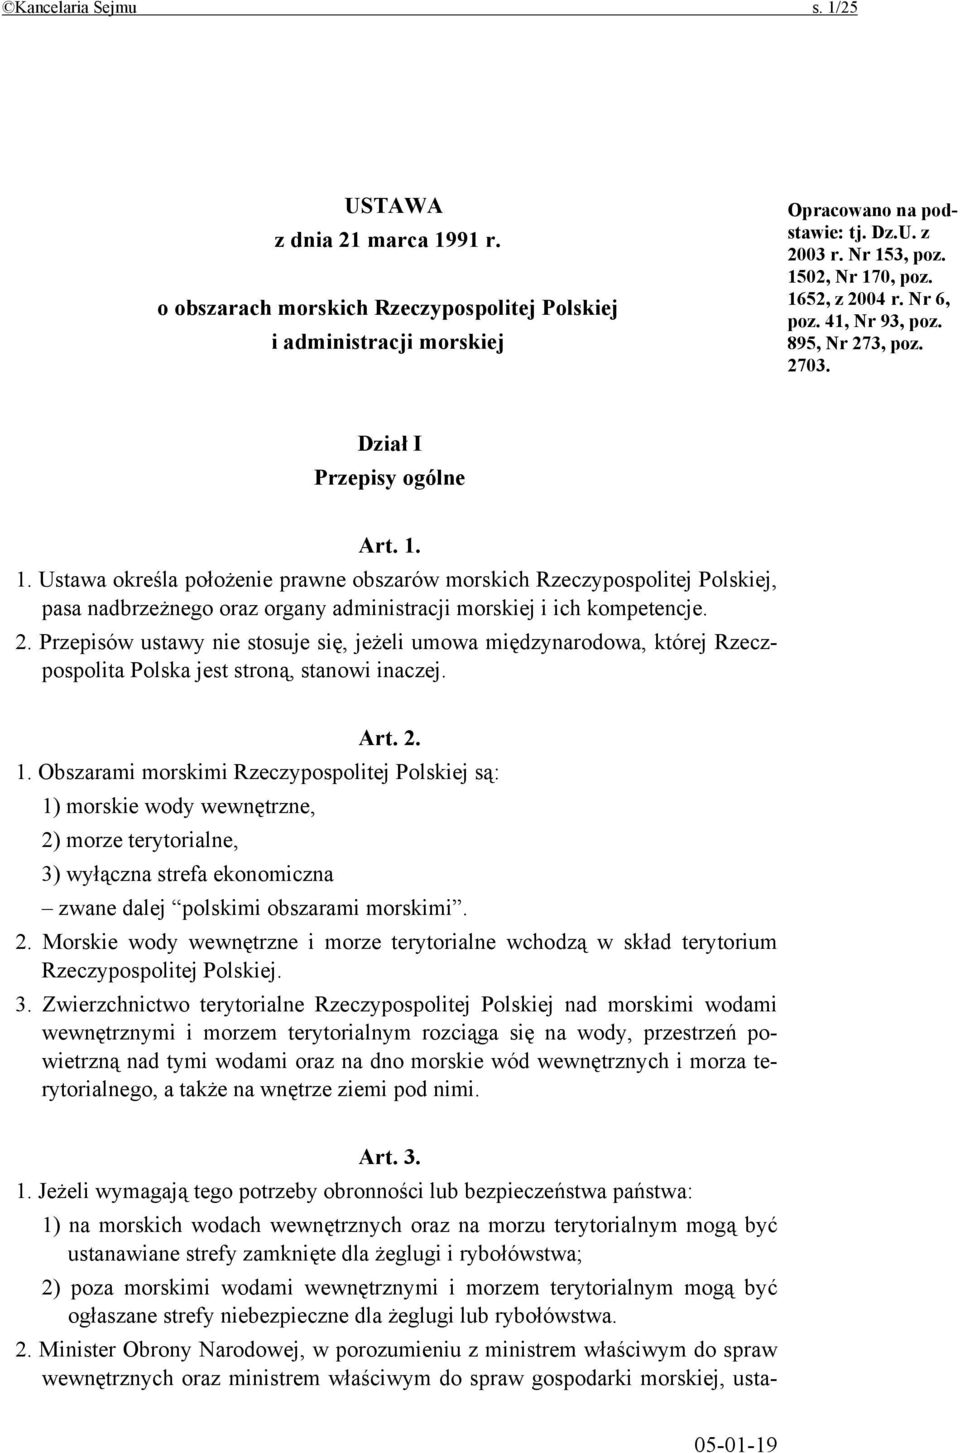 2. Przepisów ustawy nie stosuje się, jeżeli umowa międzynarodowa, której Rzeczpospolita Polska jest stroną, stanowi inaczej. Art. 2. 1.